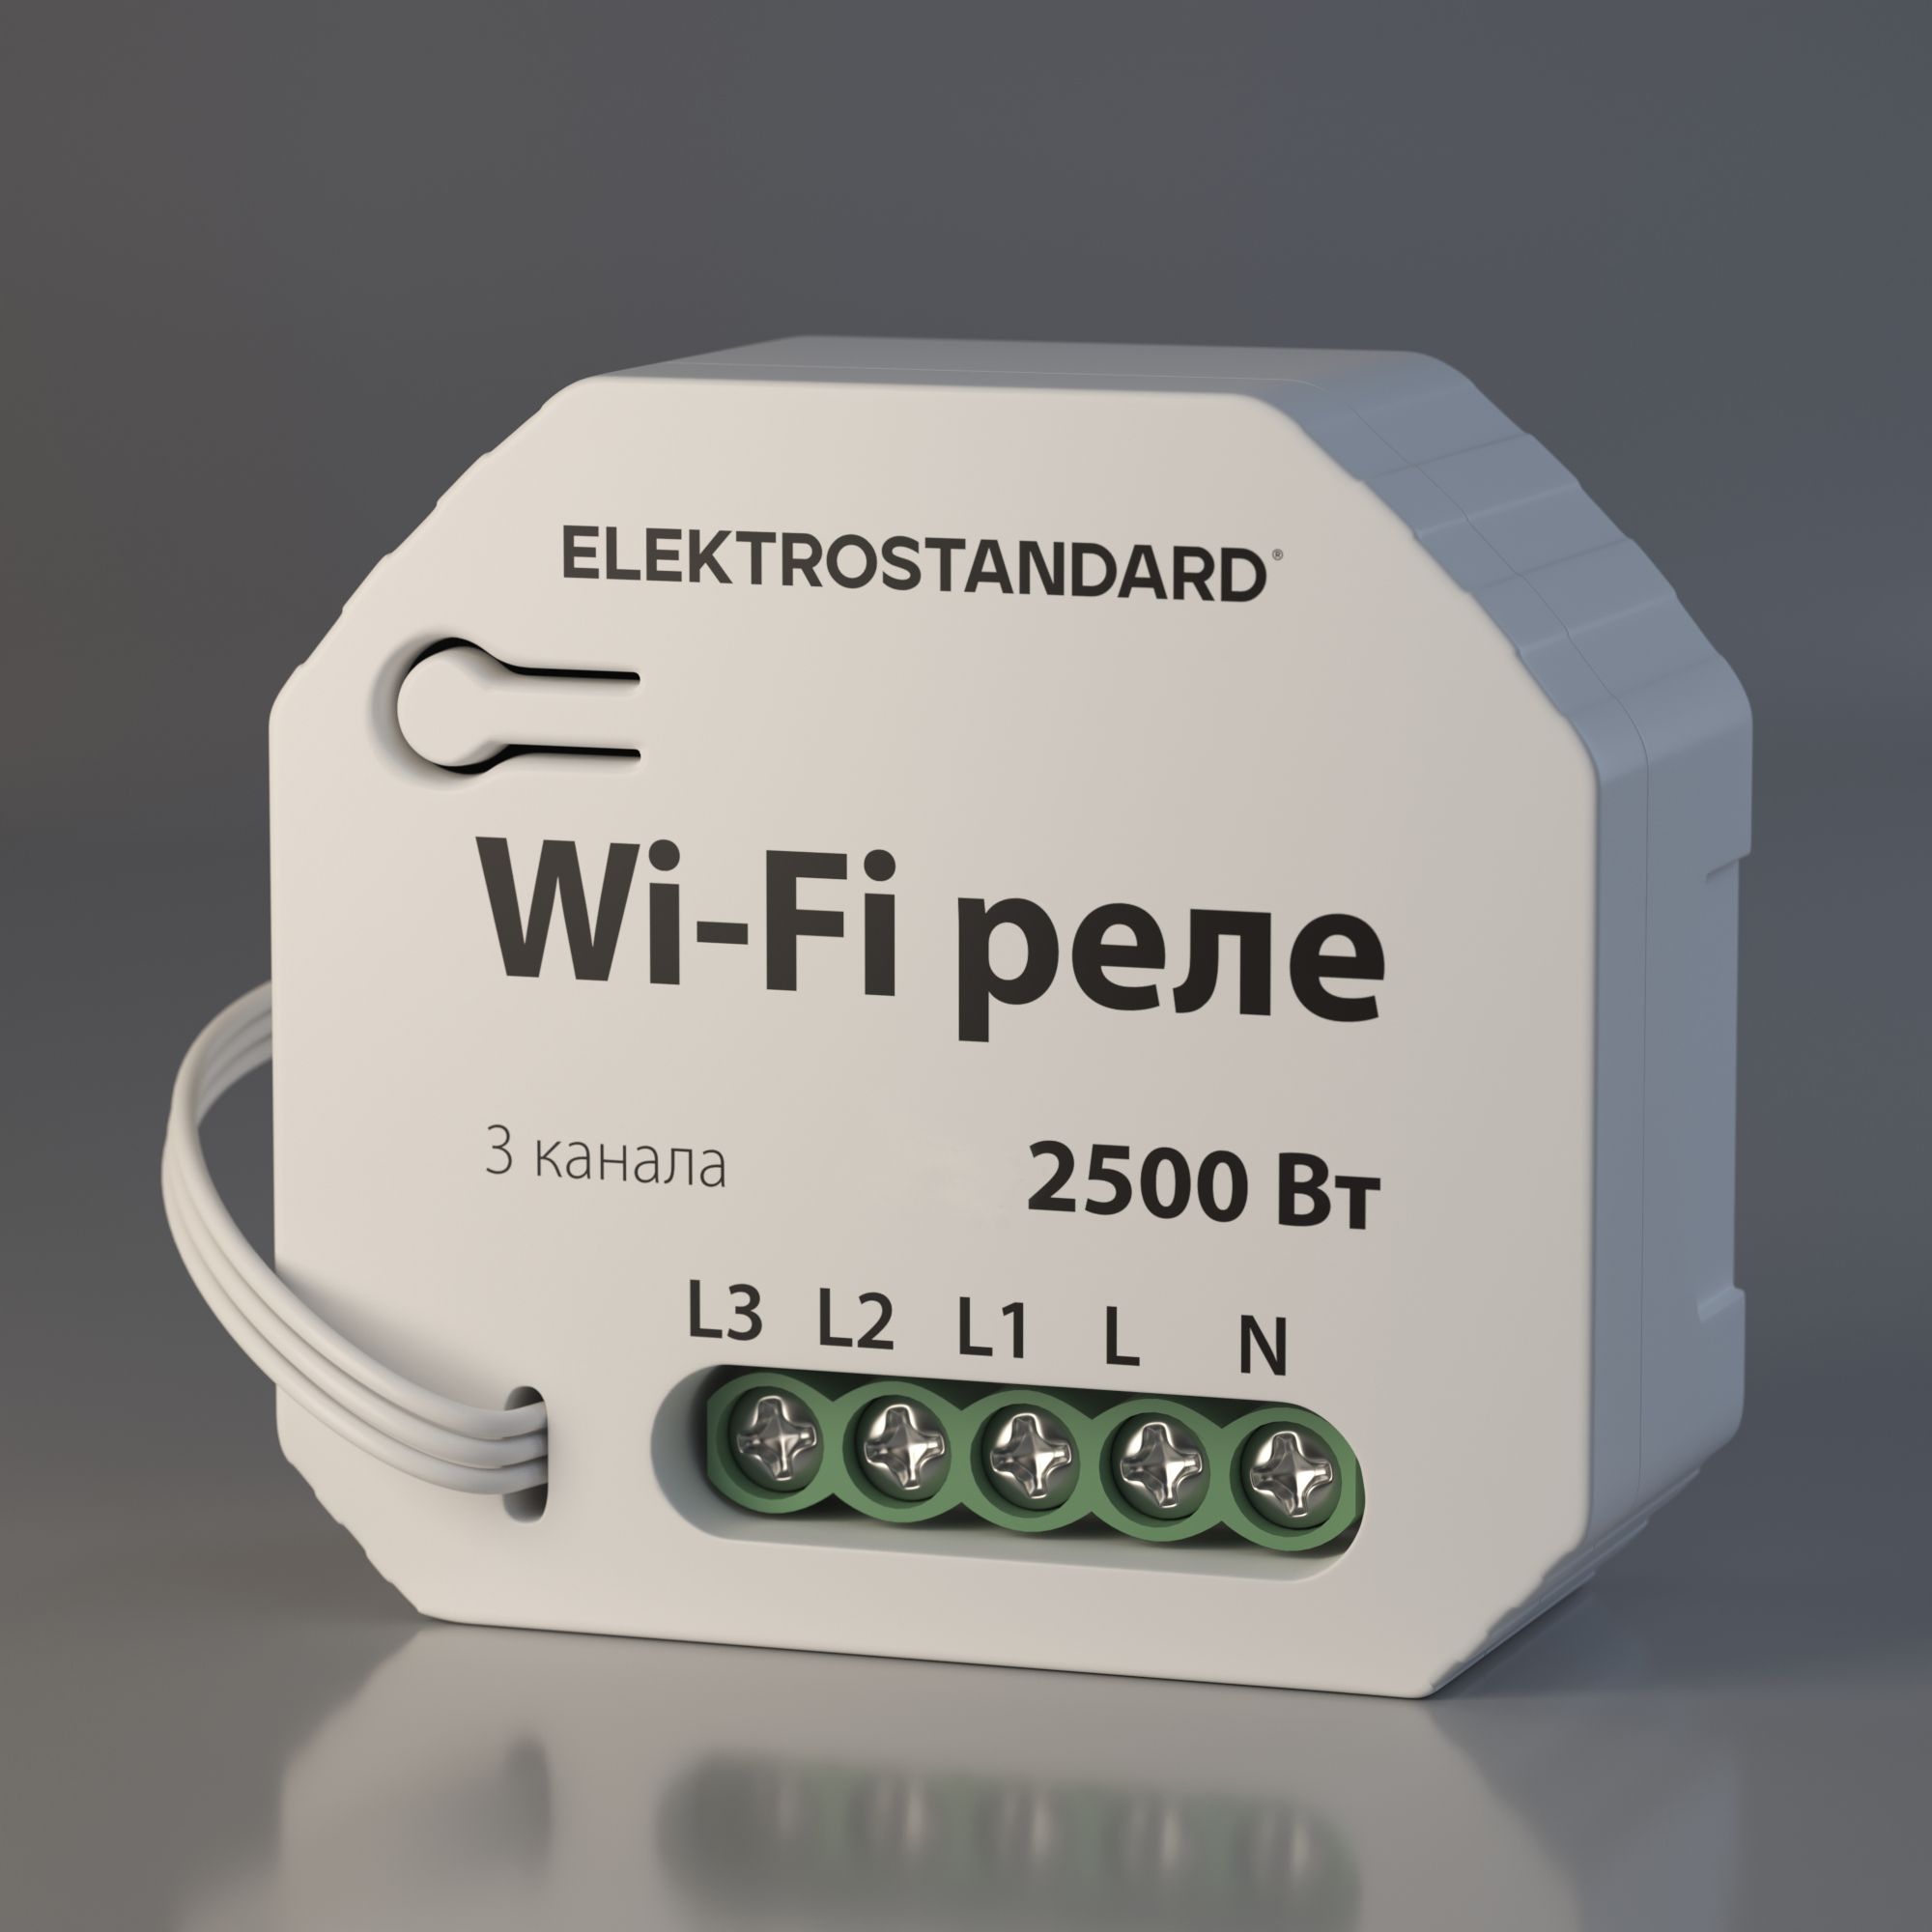 Wi-Fi  Elektrostandard WF 76004/00   